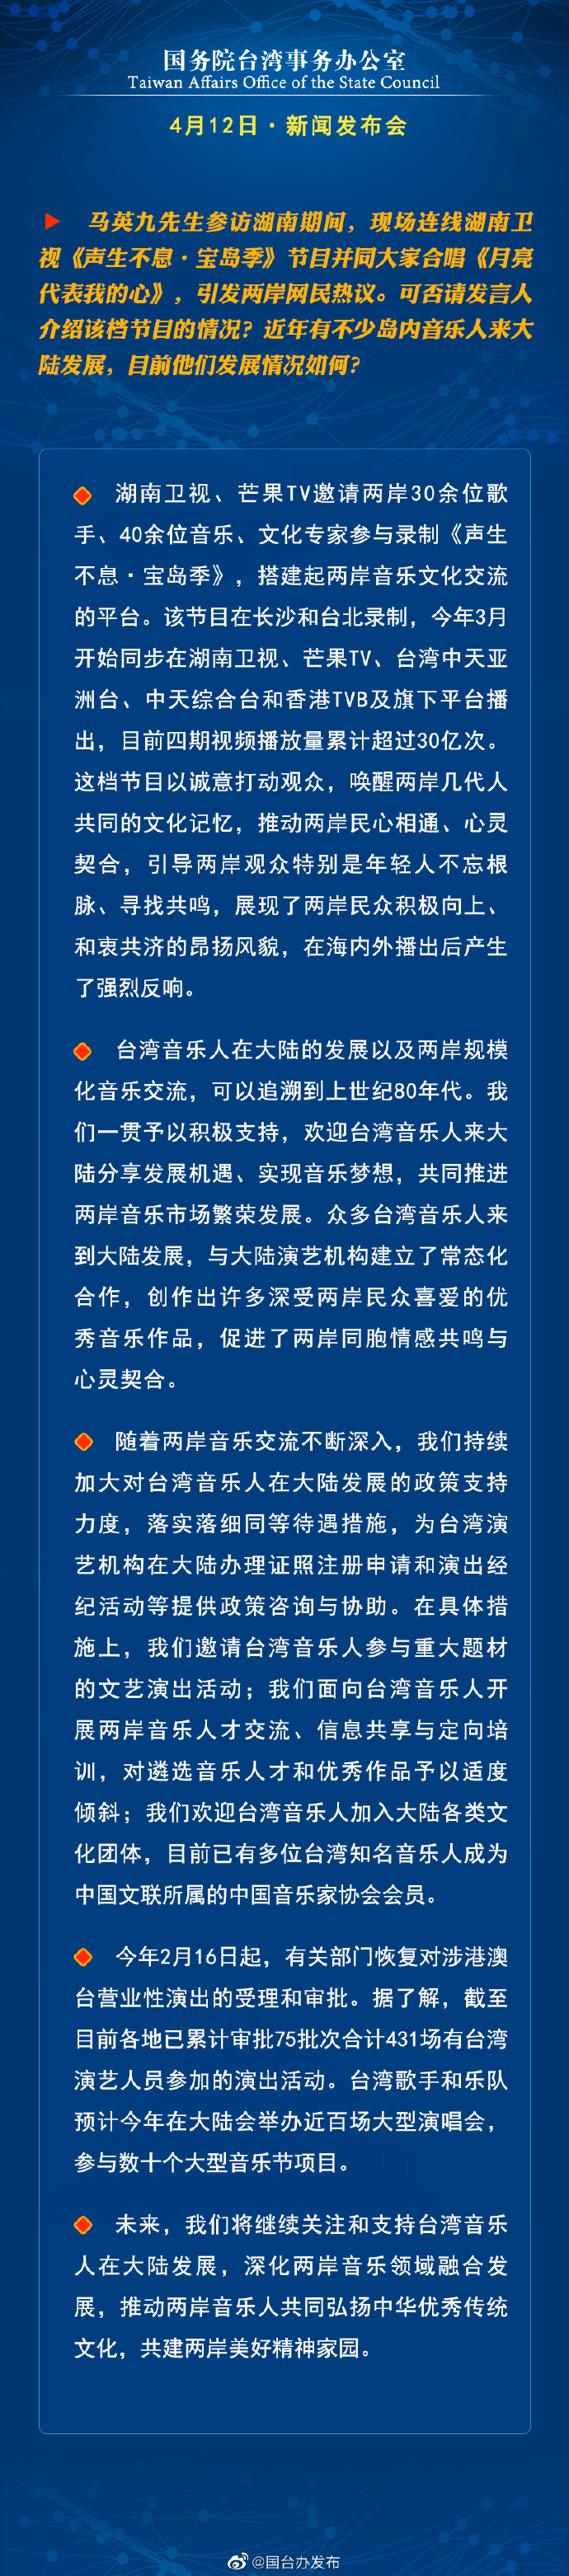 国务院台湾事务办公室4月12日·新闻发布会